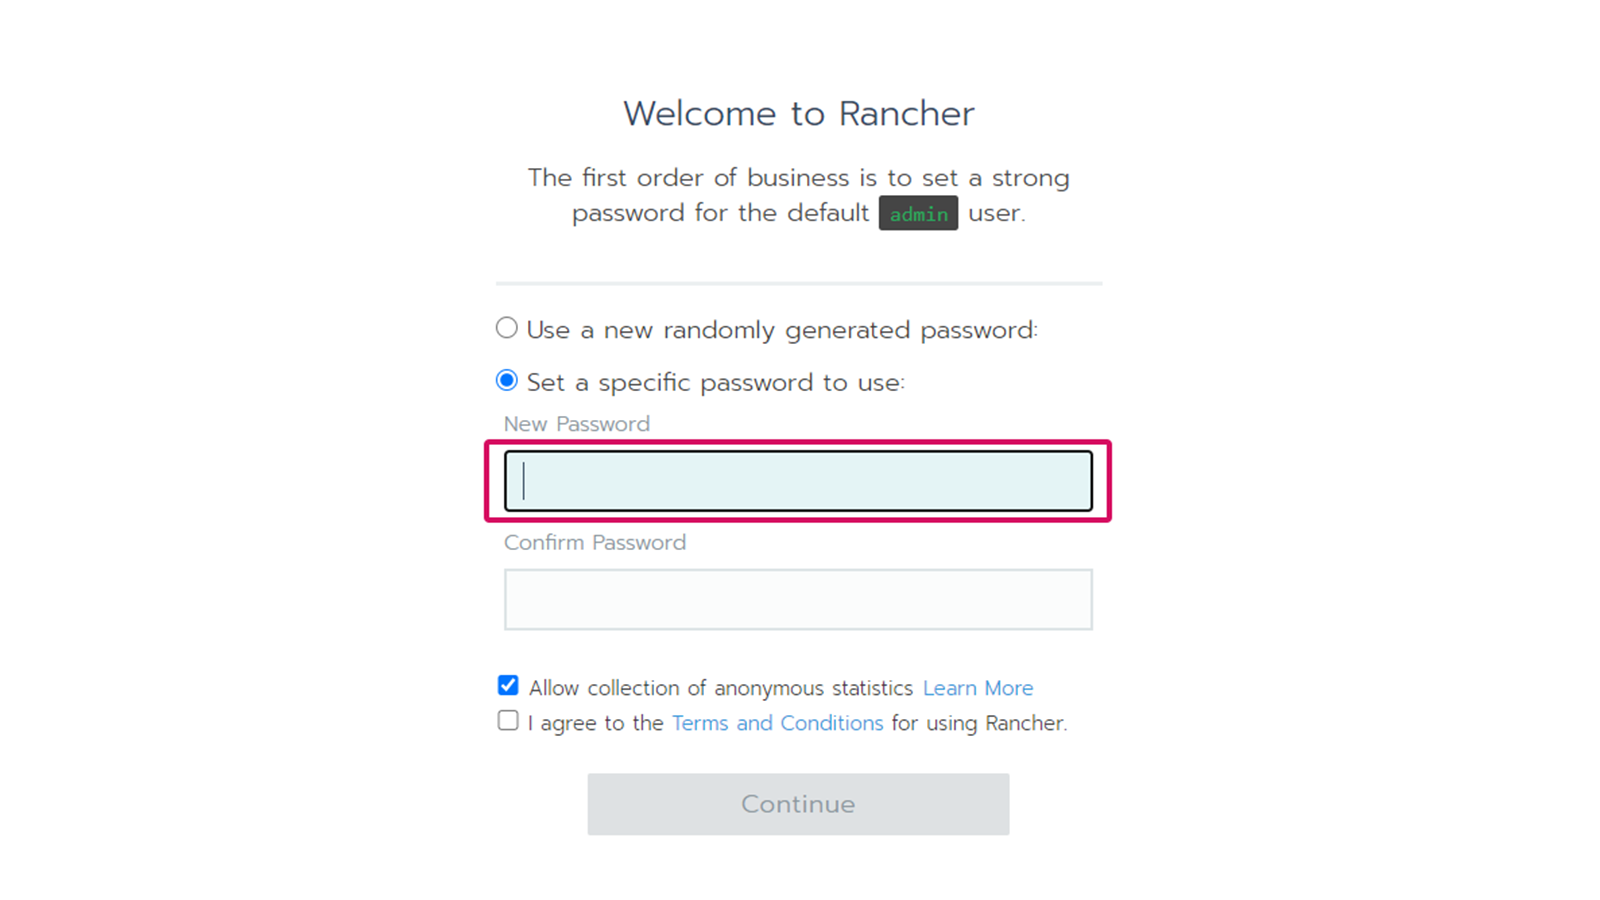 Första gången du besöker Rancher behöver du sätta ett lösenord för admin-användaren